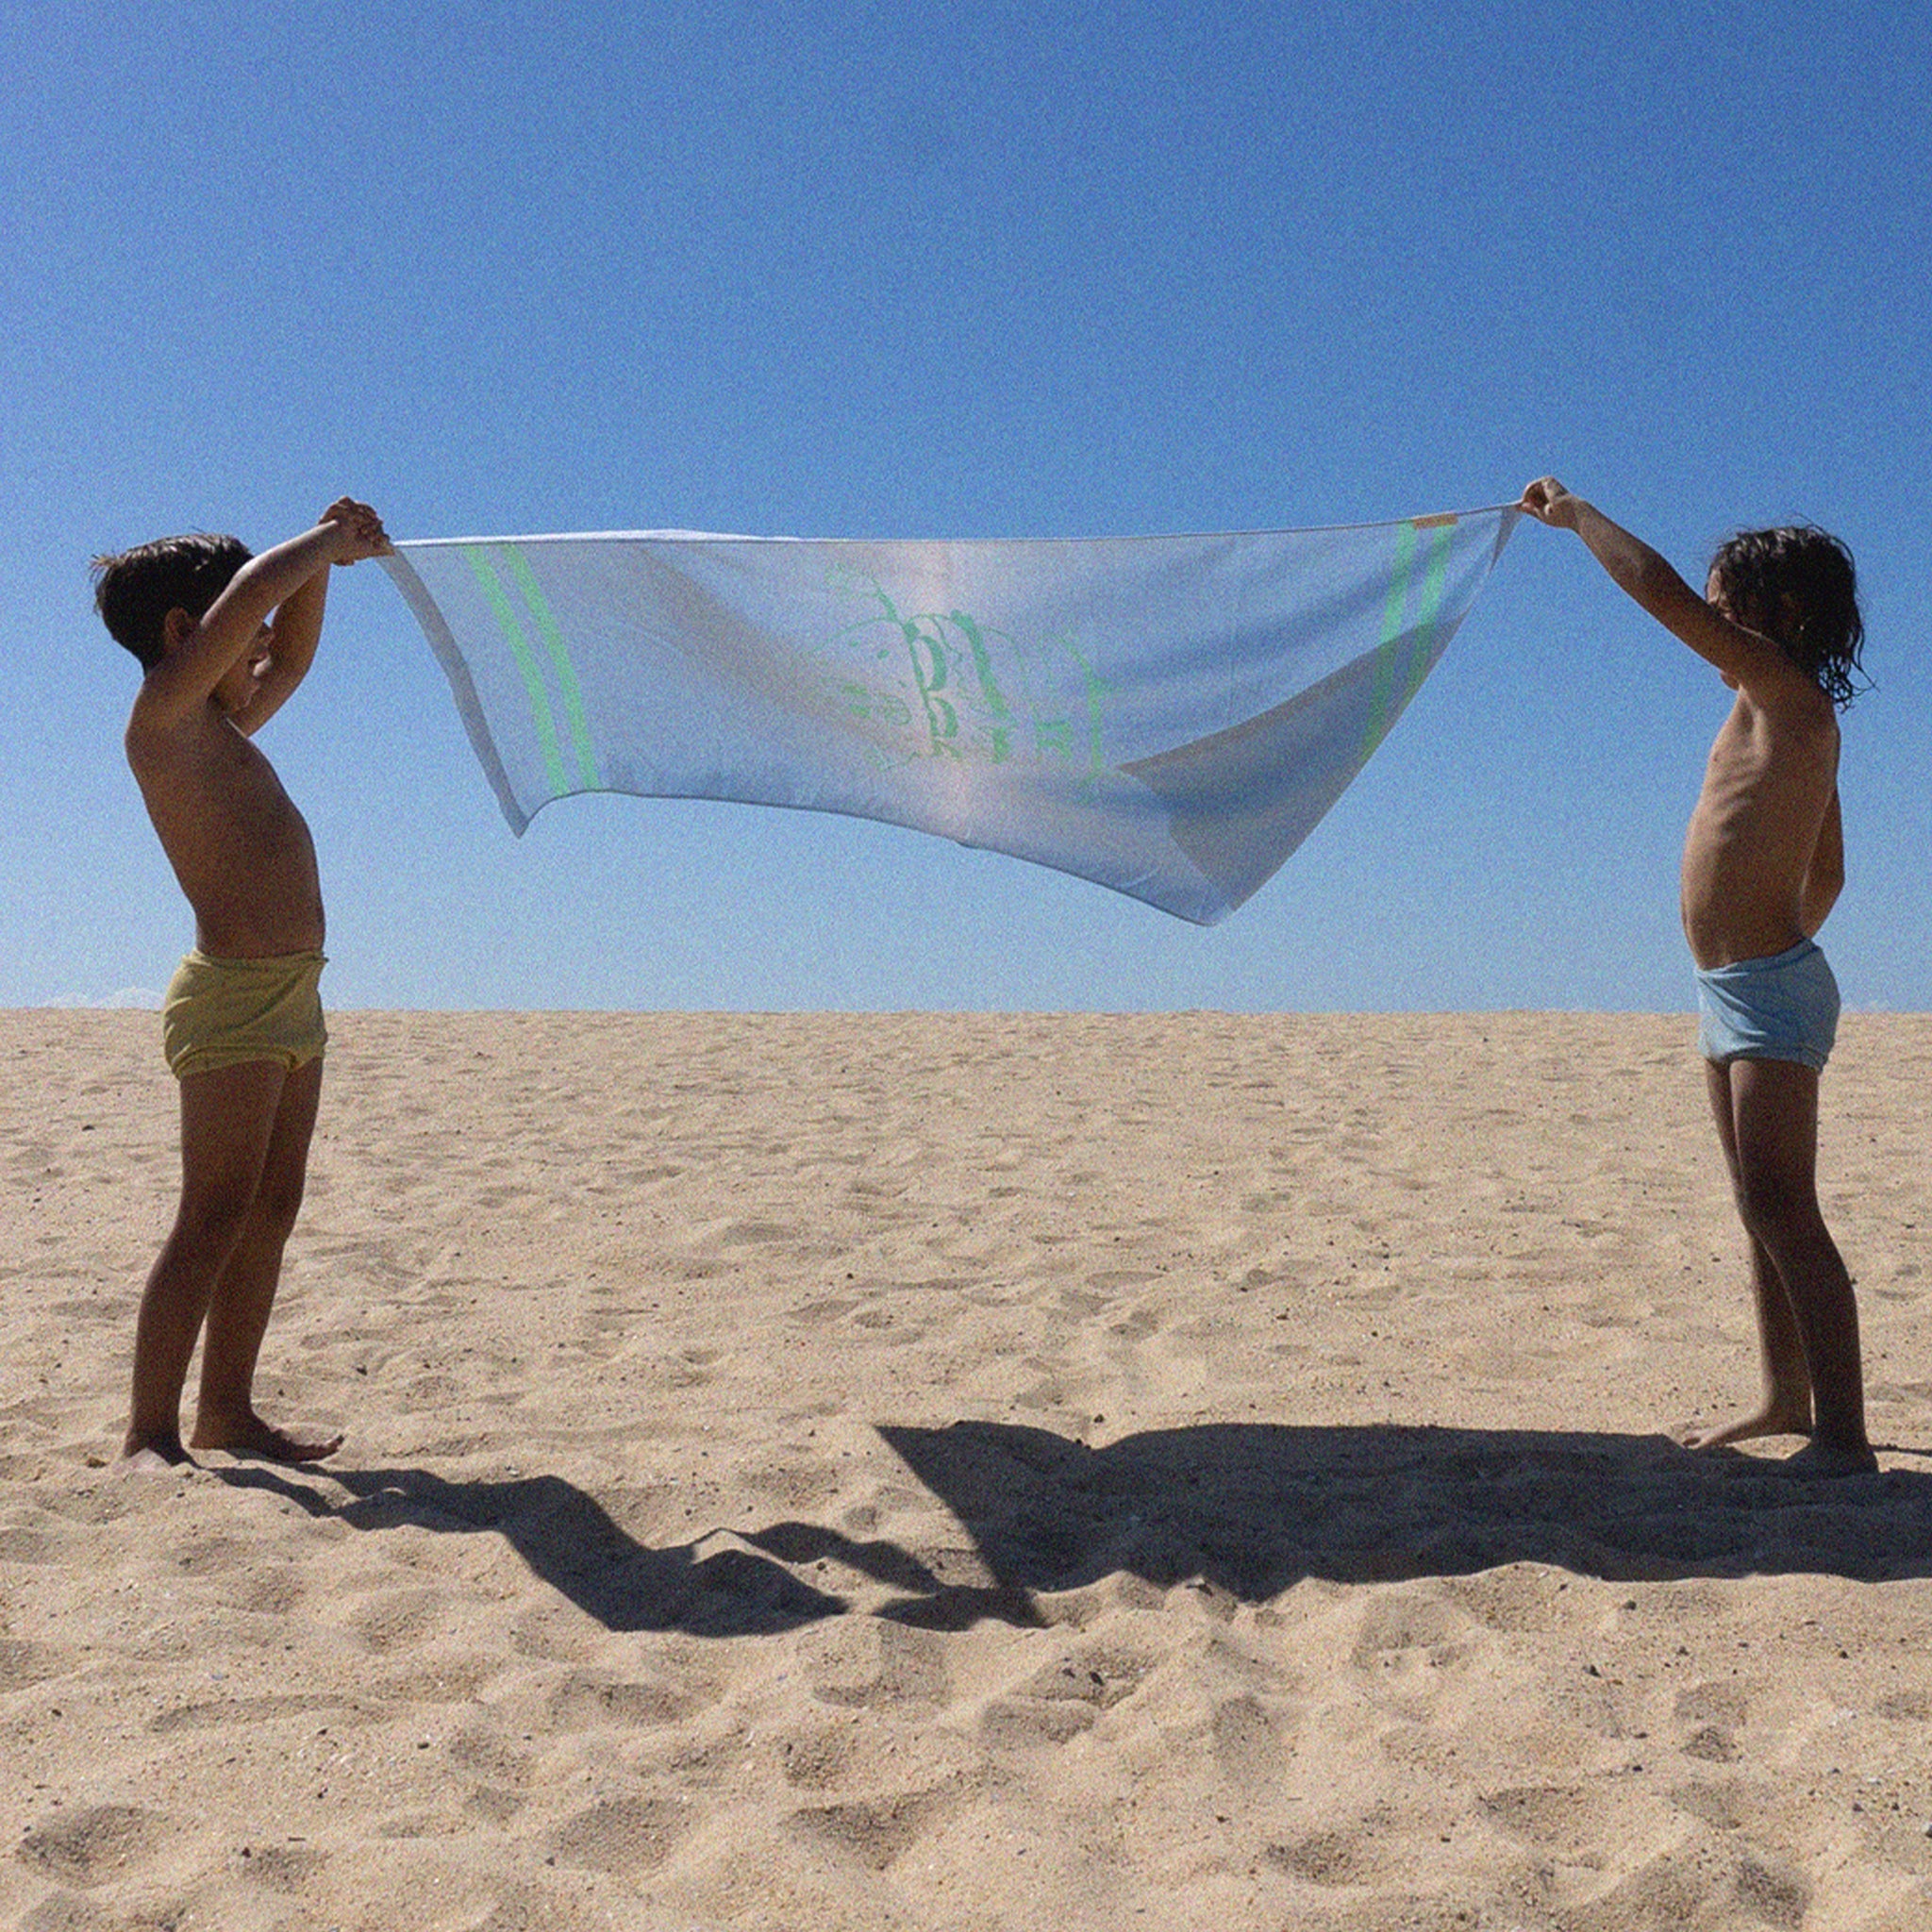 Kids Beach Towel | The Sea Kids Blue-Lime